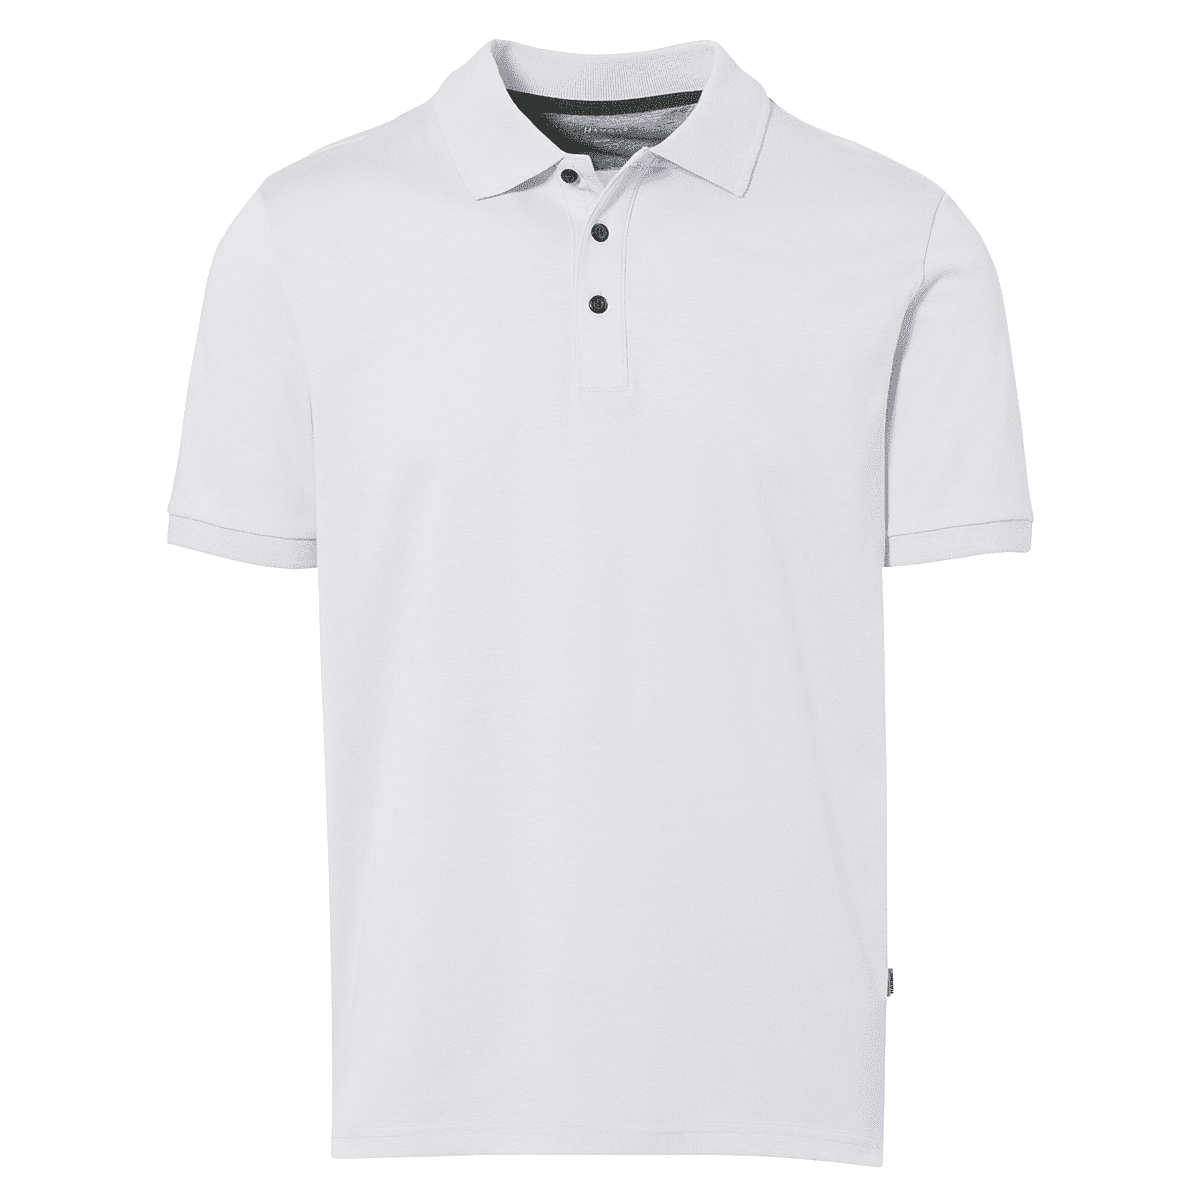 Herren Polo-Shirt Funktion weiß